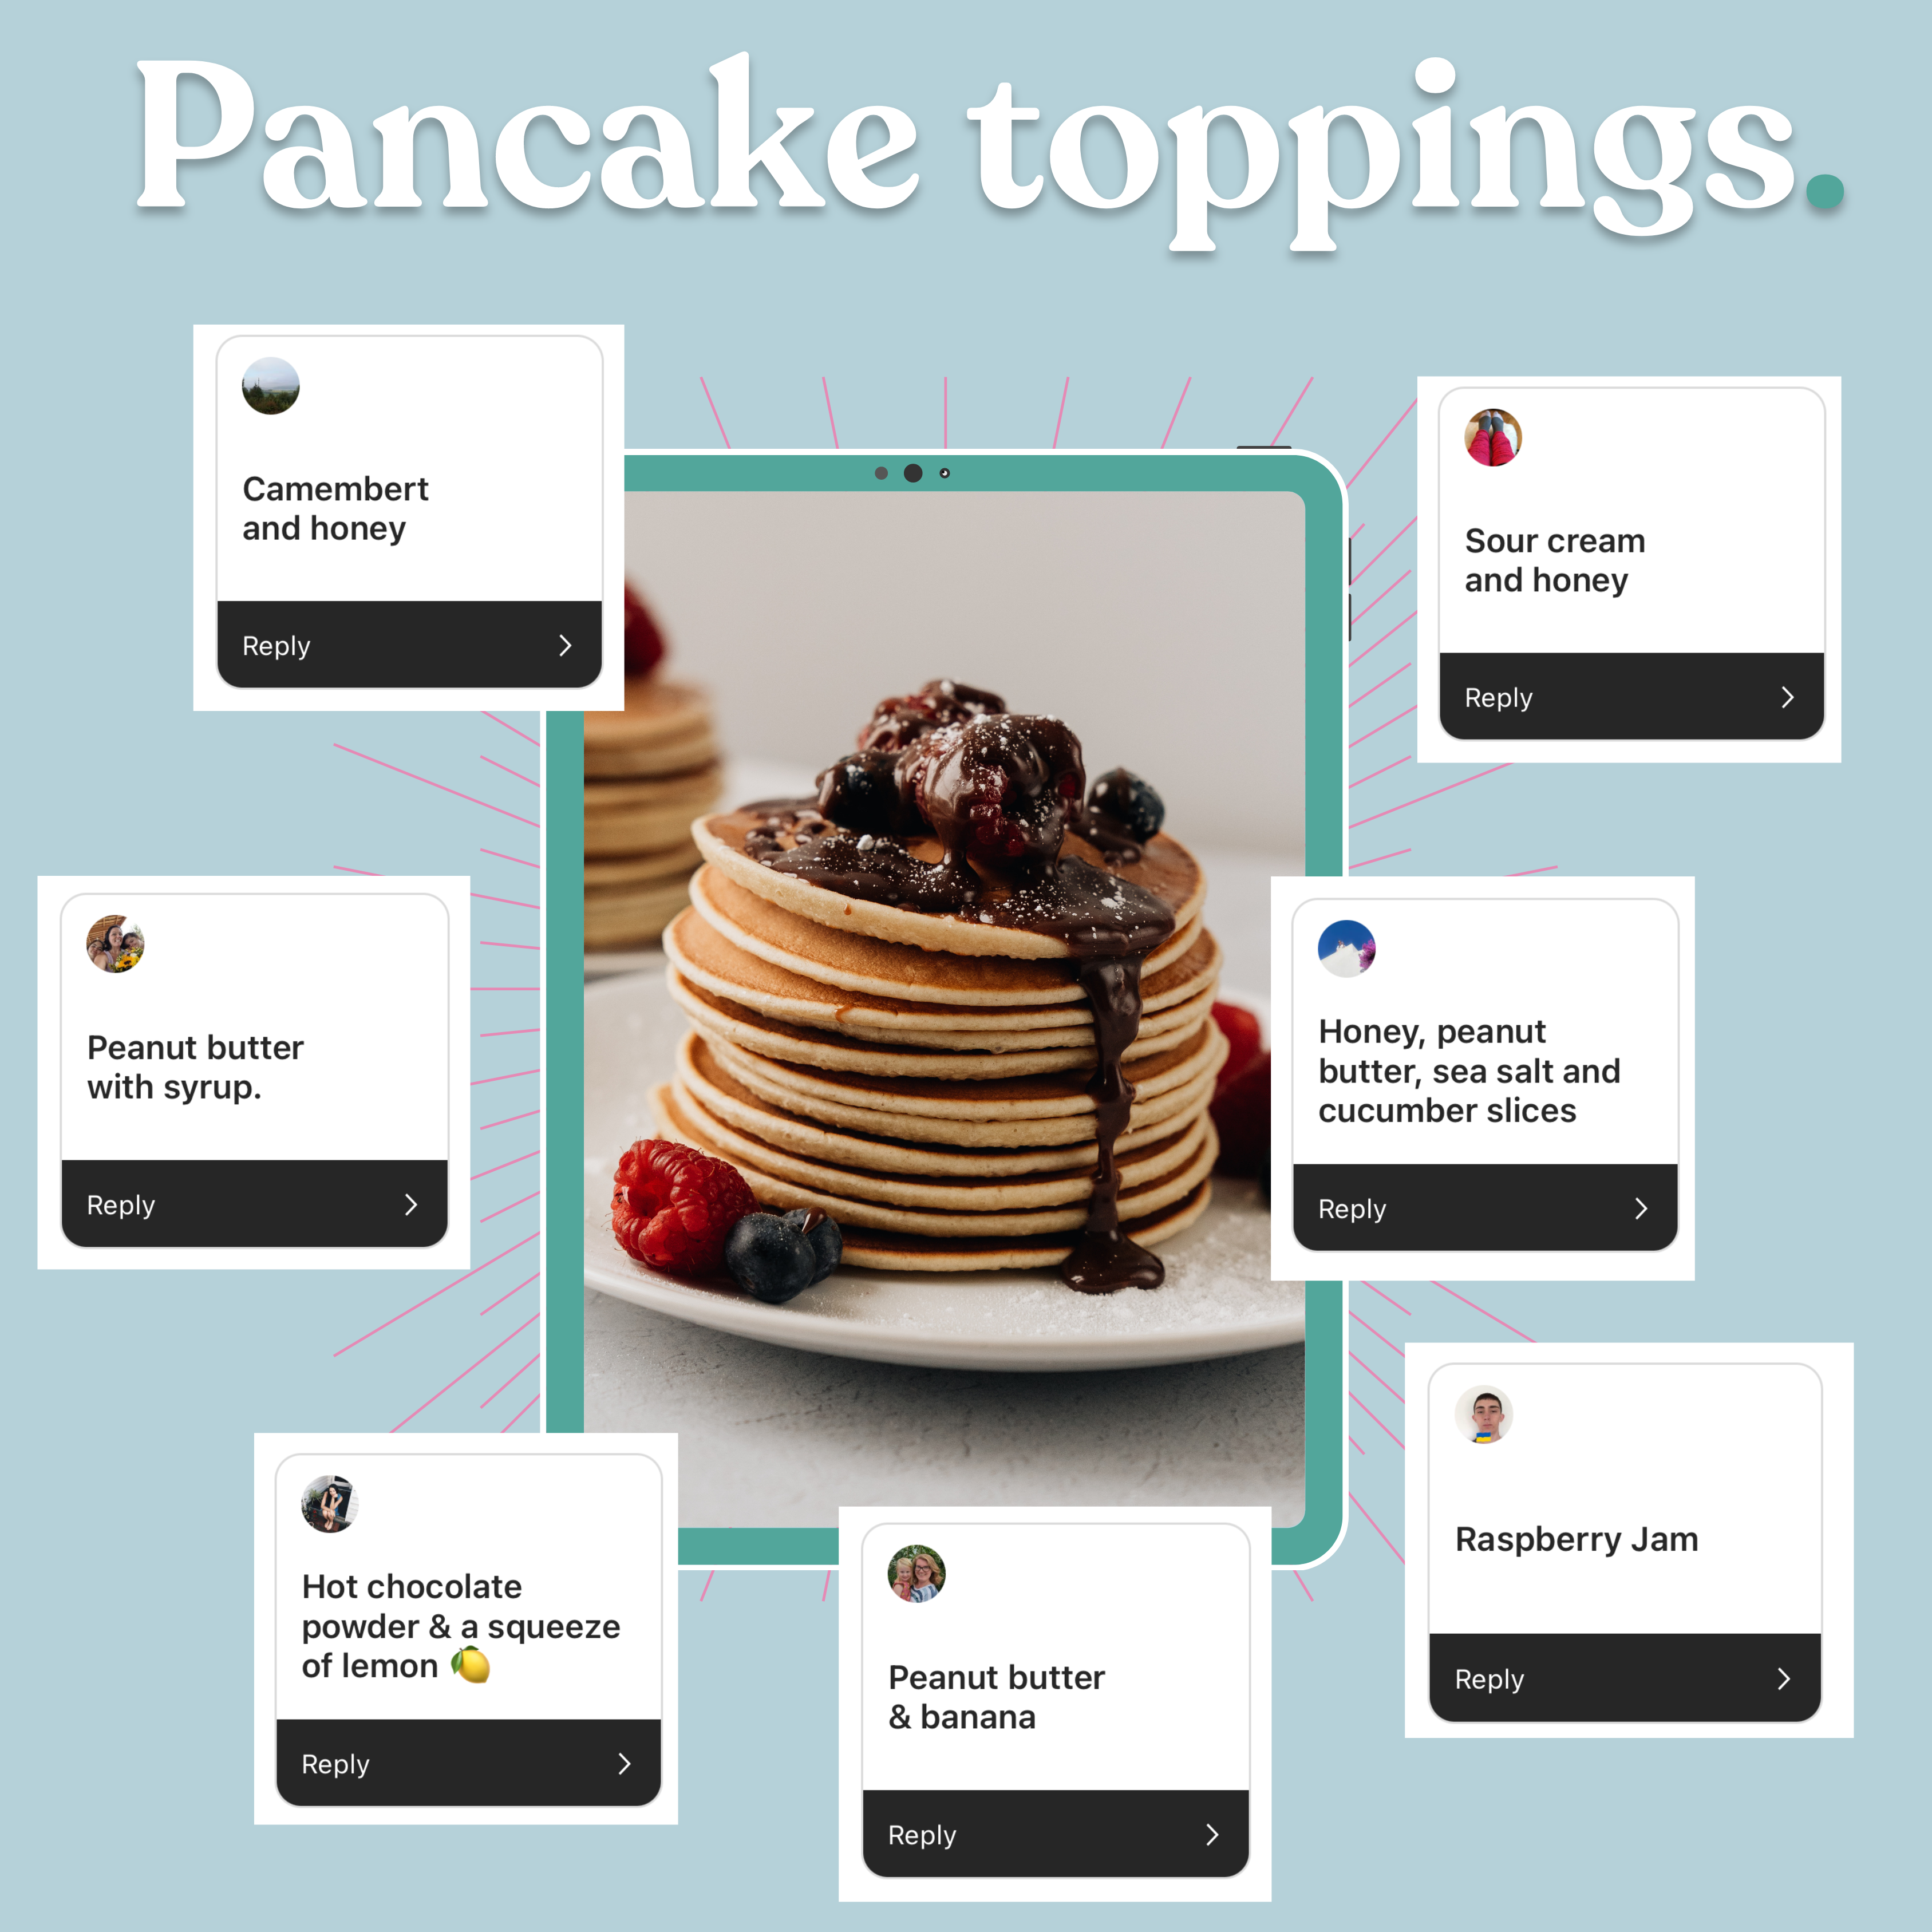 Pancake toppings